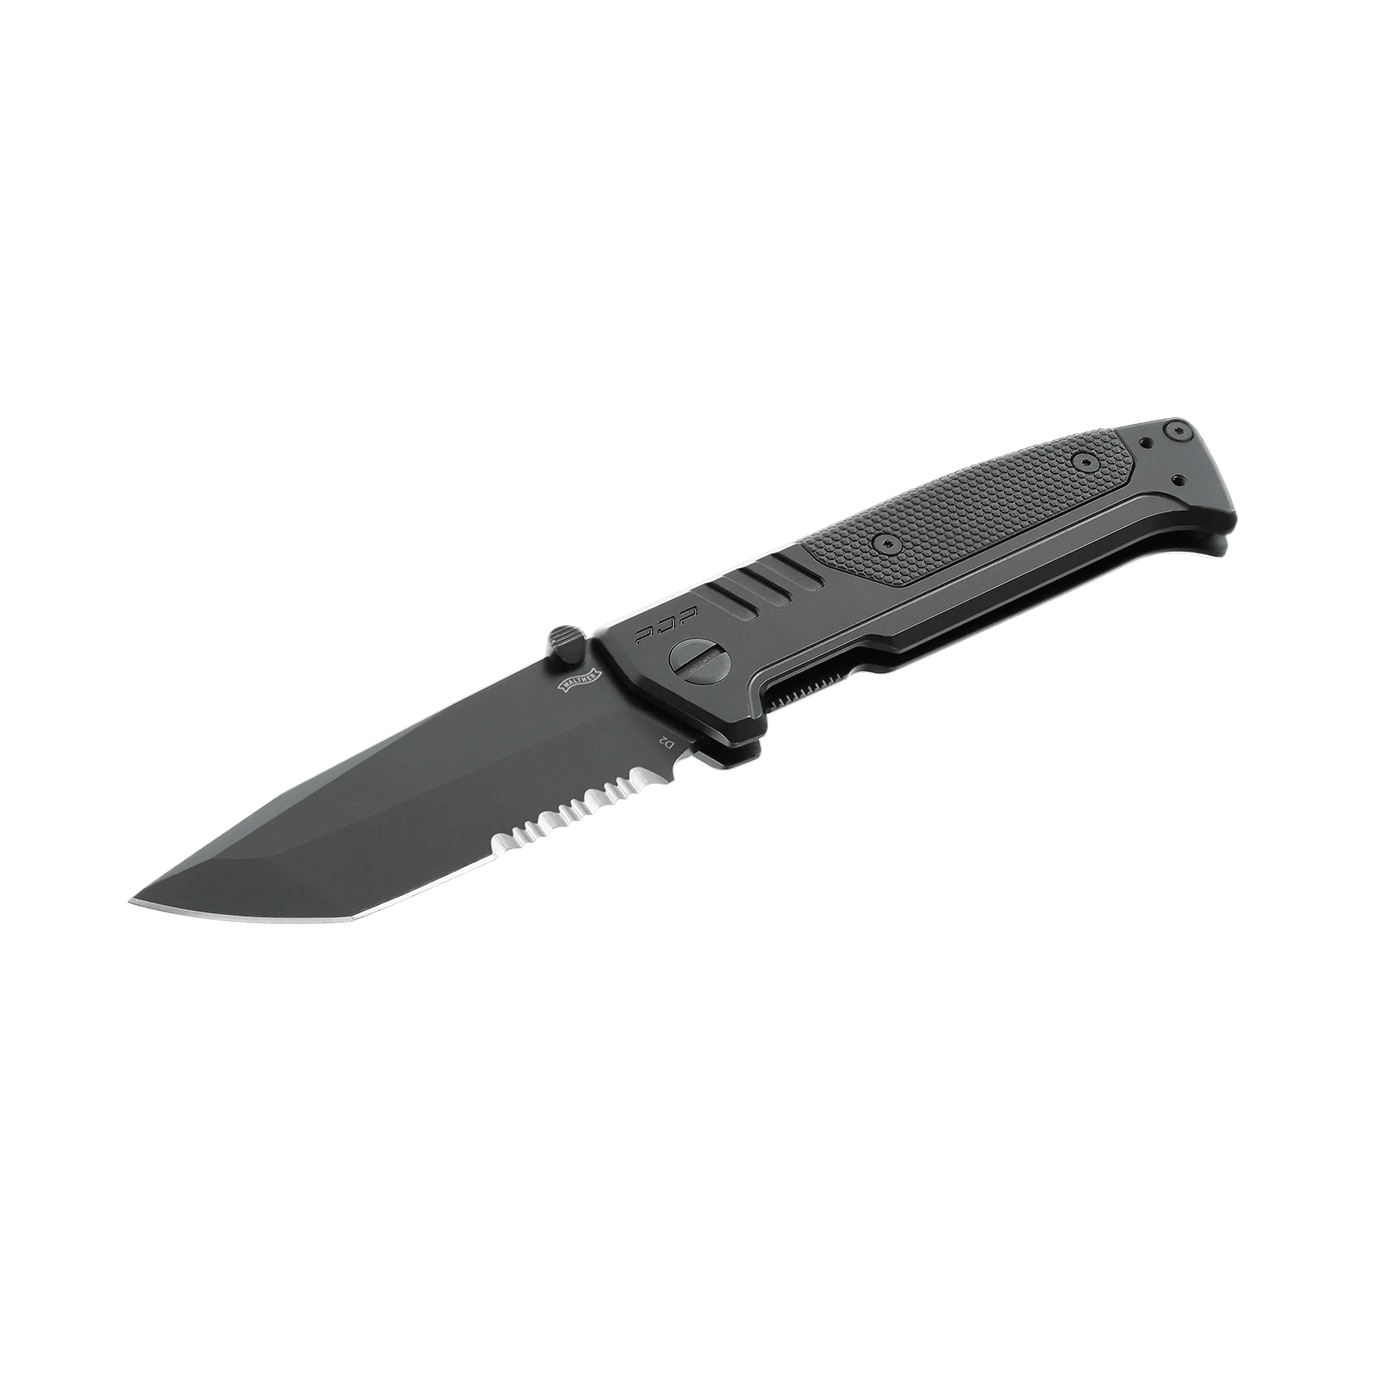 KNIFE - WALTHER/UMAREX - PDP STEEL FRAME TANTO FOLDER SERRATED, black